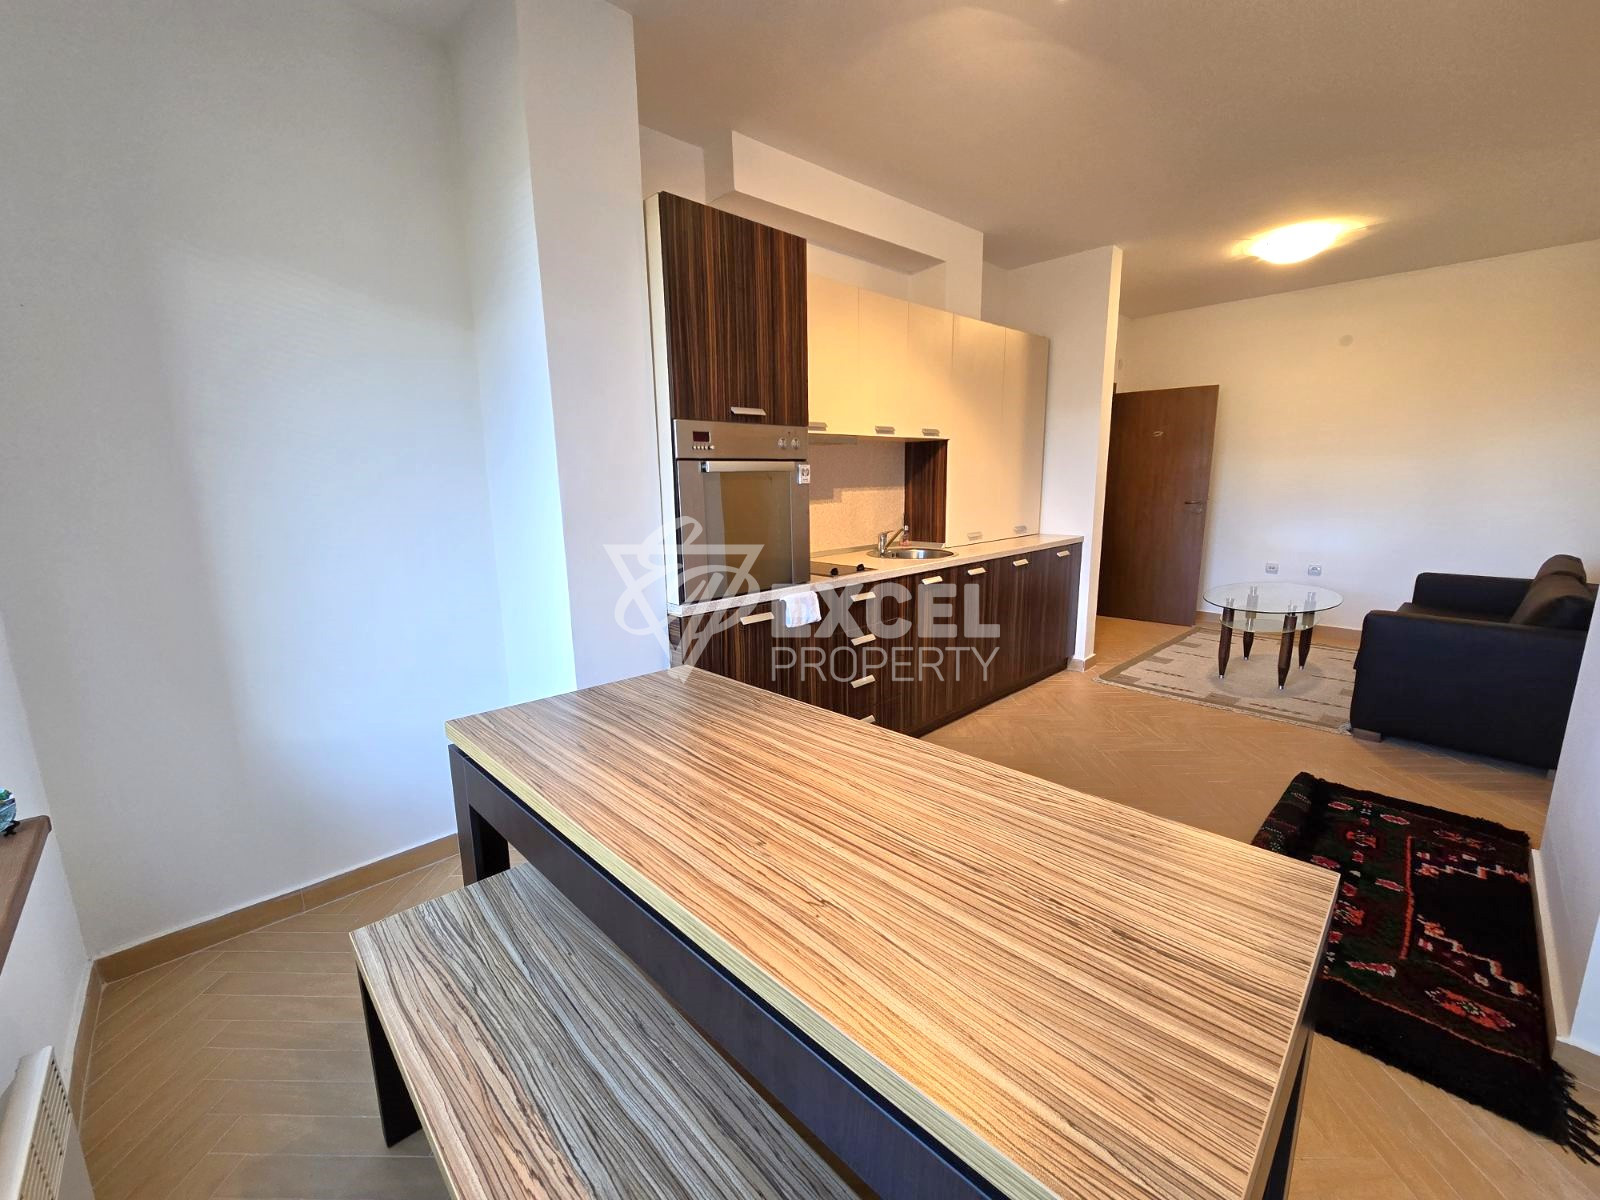 Продается меблированная двухкомнатная квартира с подвалом рядом с комплексом БЕЛЬВЕДЕРЕ, Банско